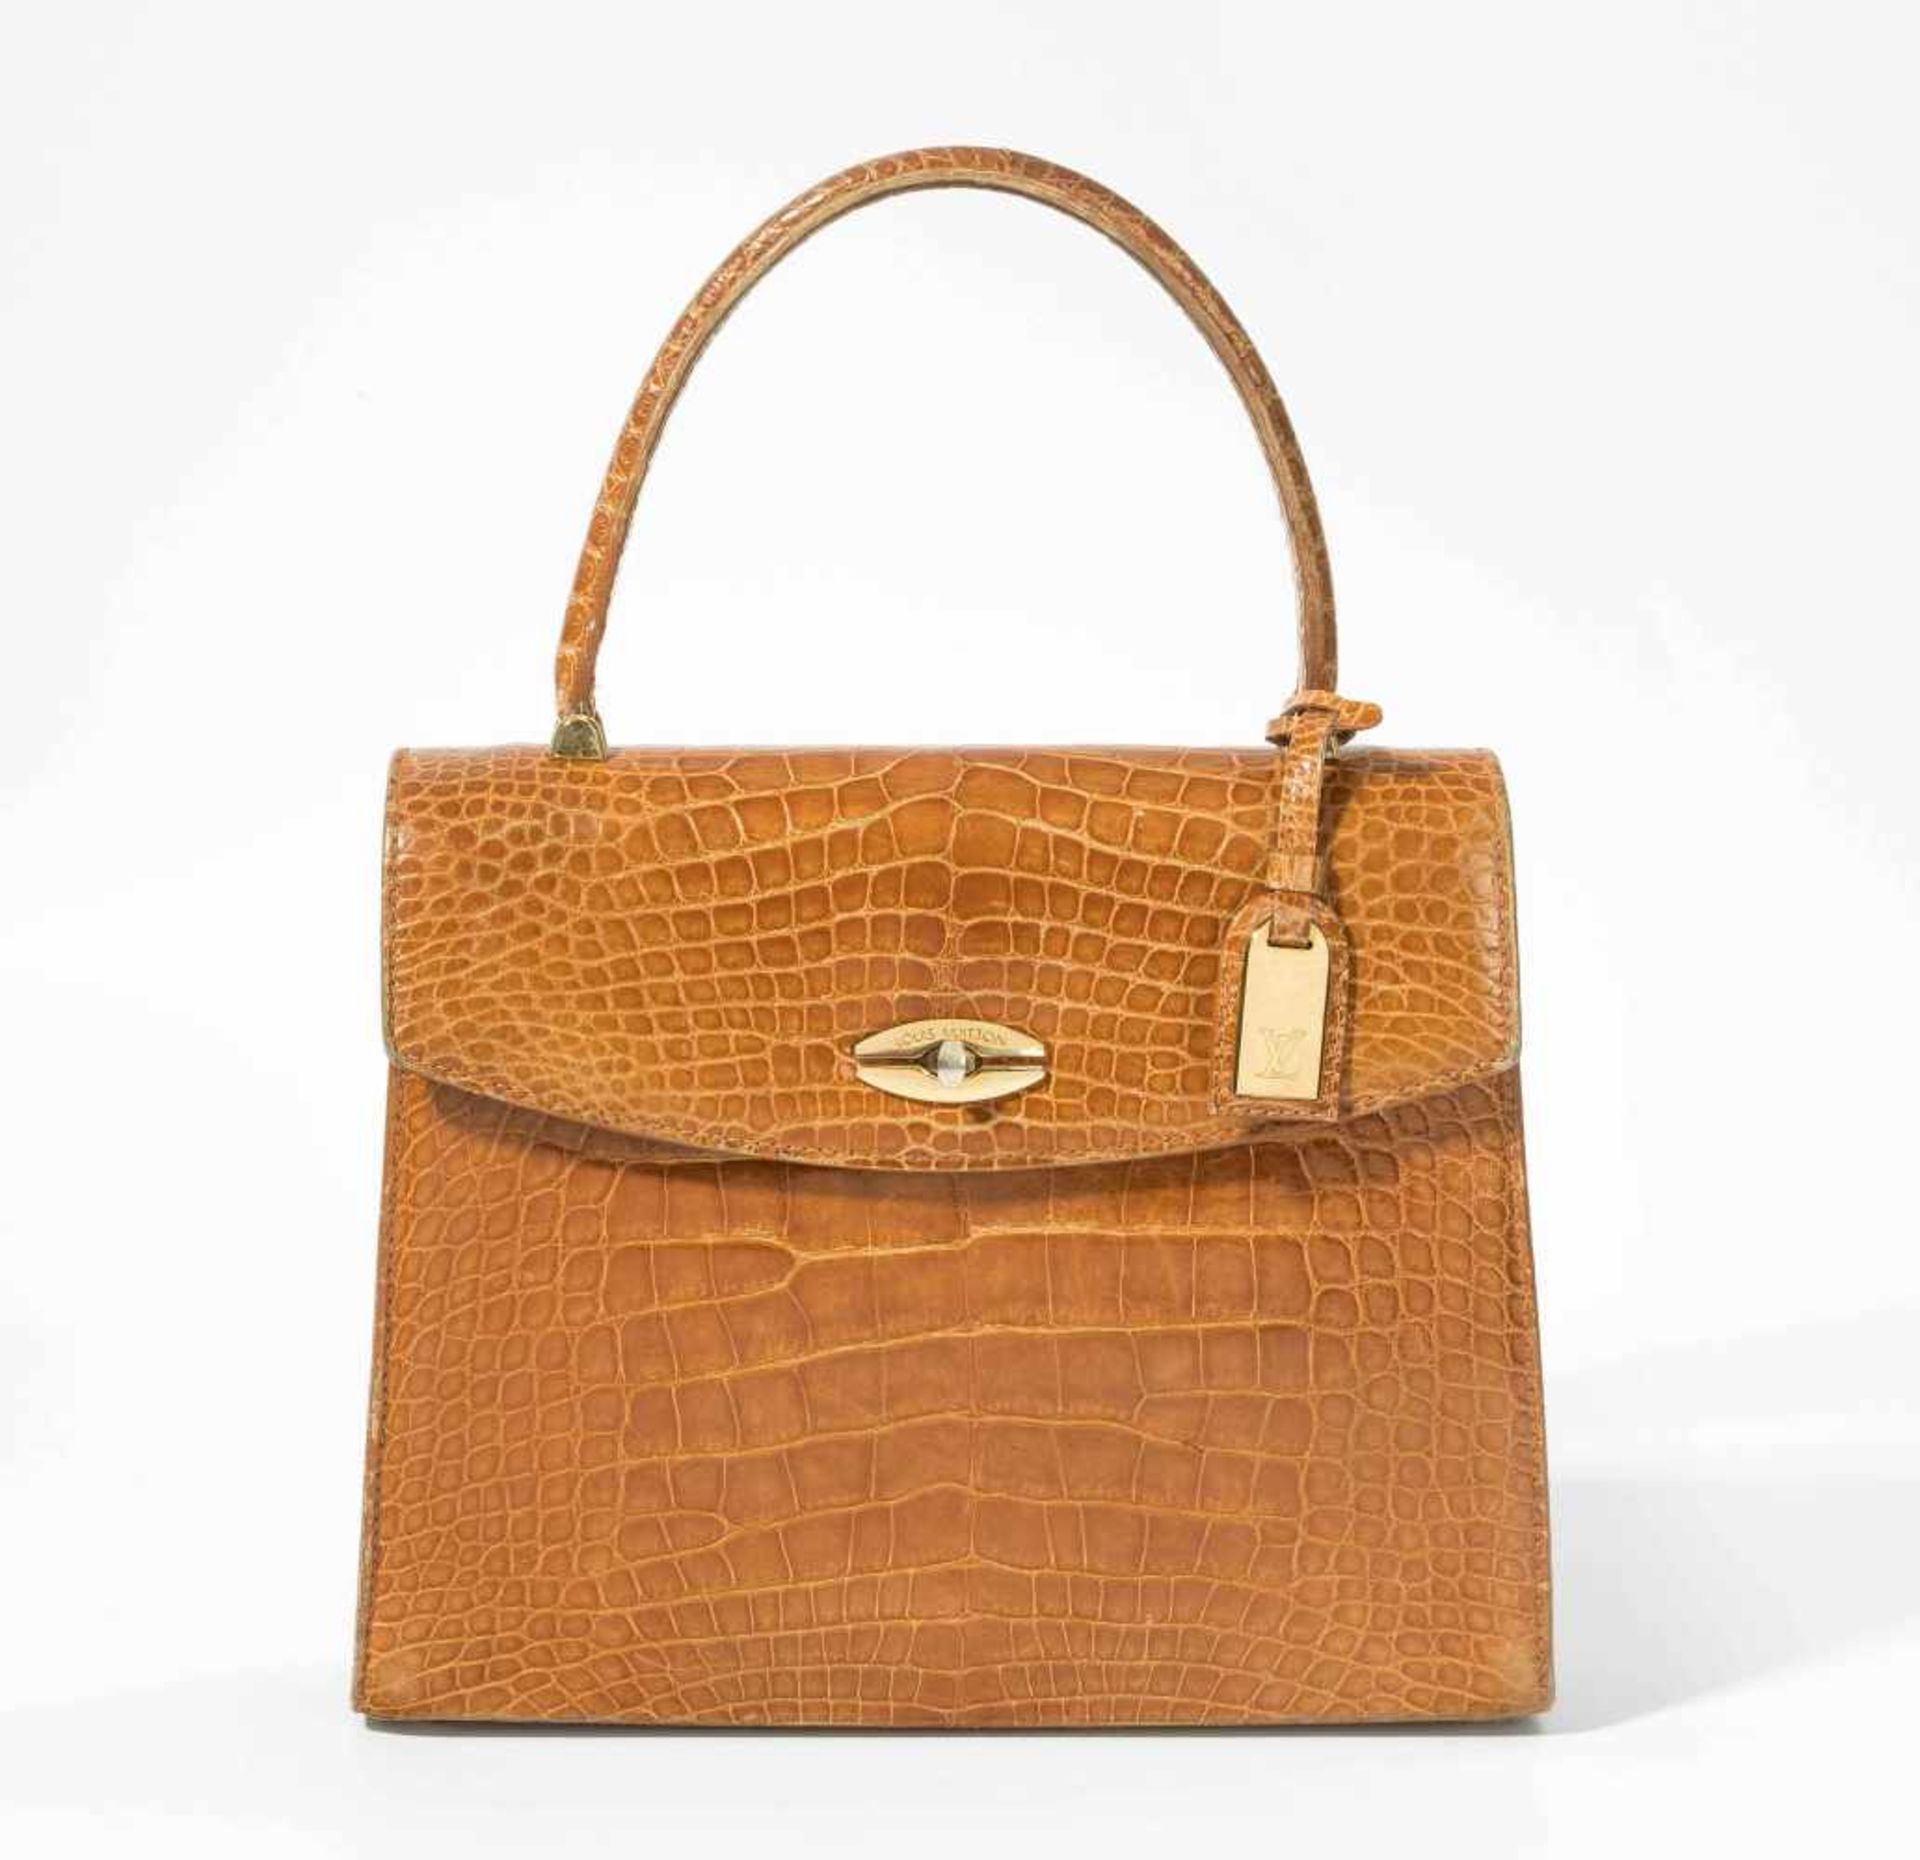 Louis Vuitton, Handtasche "Malesherbes"Aus honigfarbenem Alligatorleder. Goldfarbene